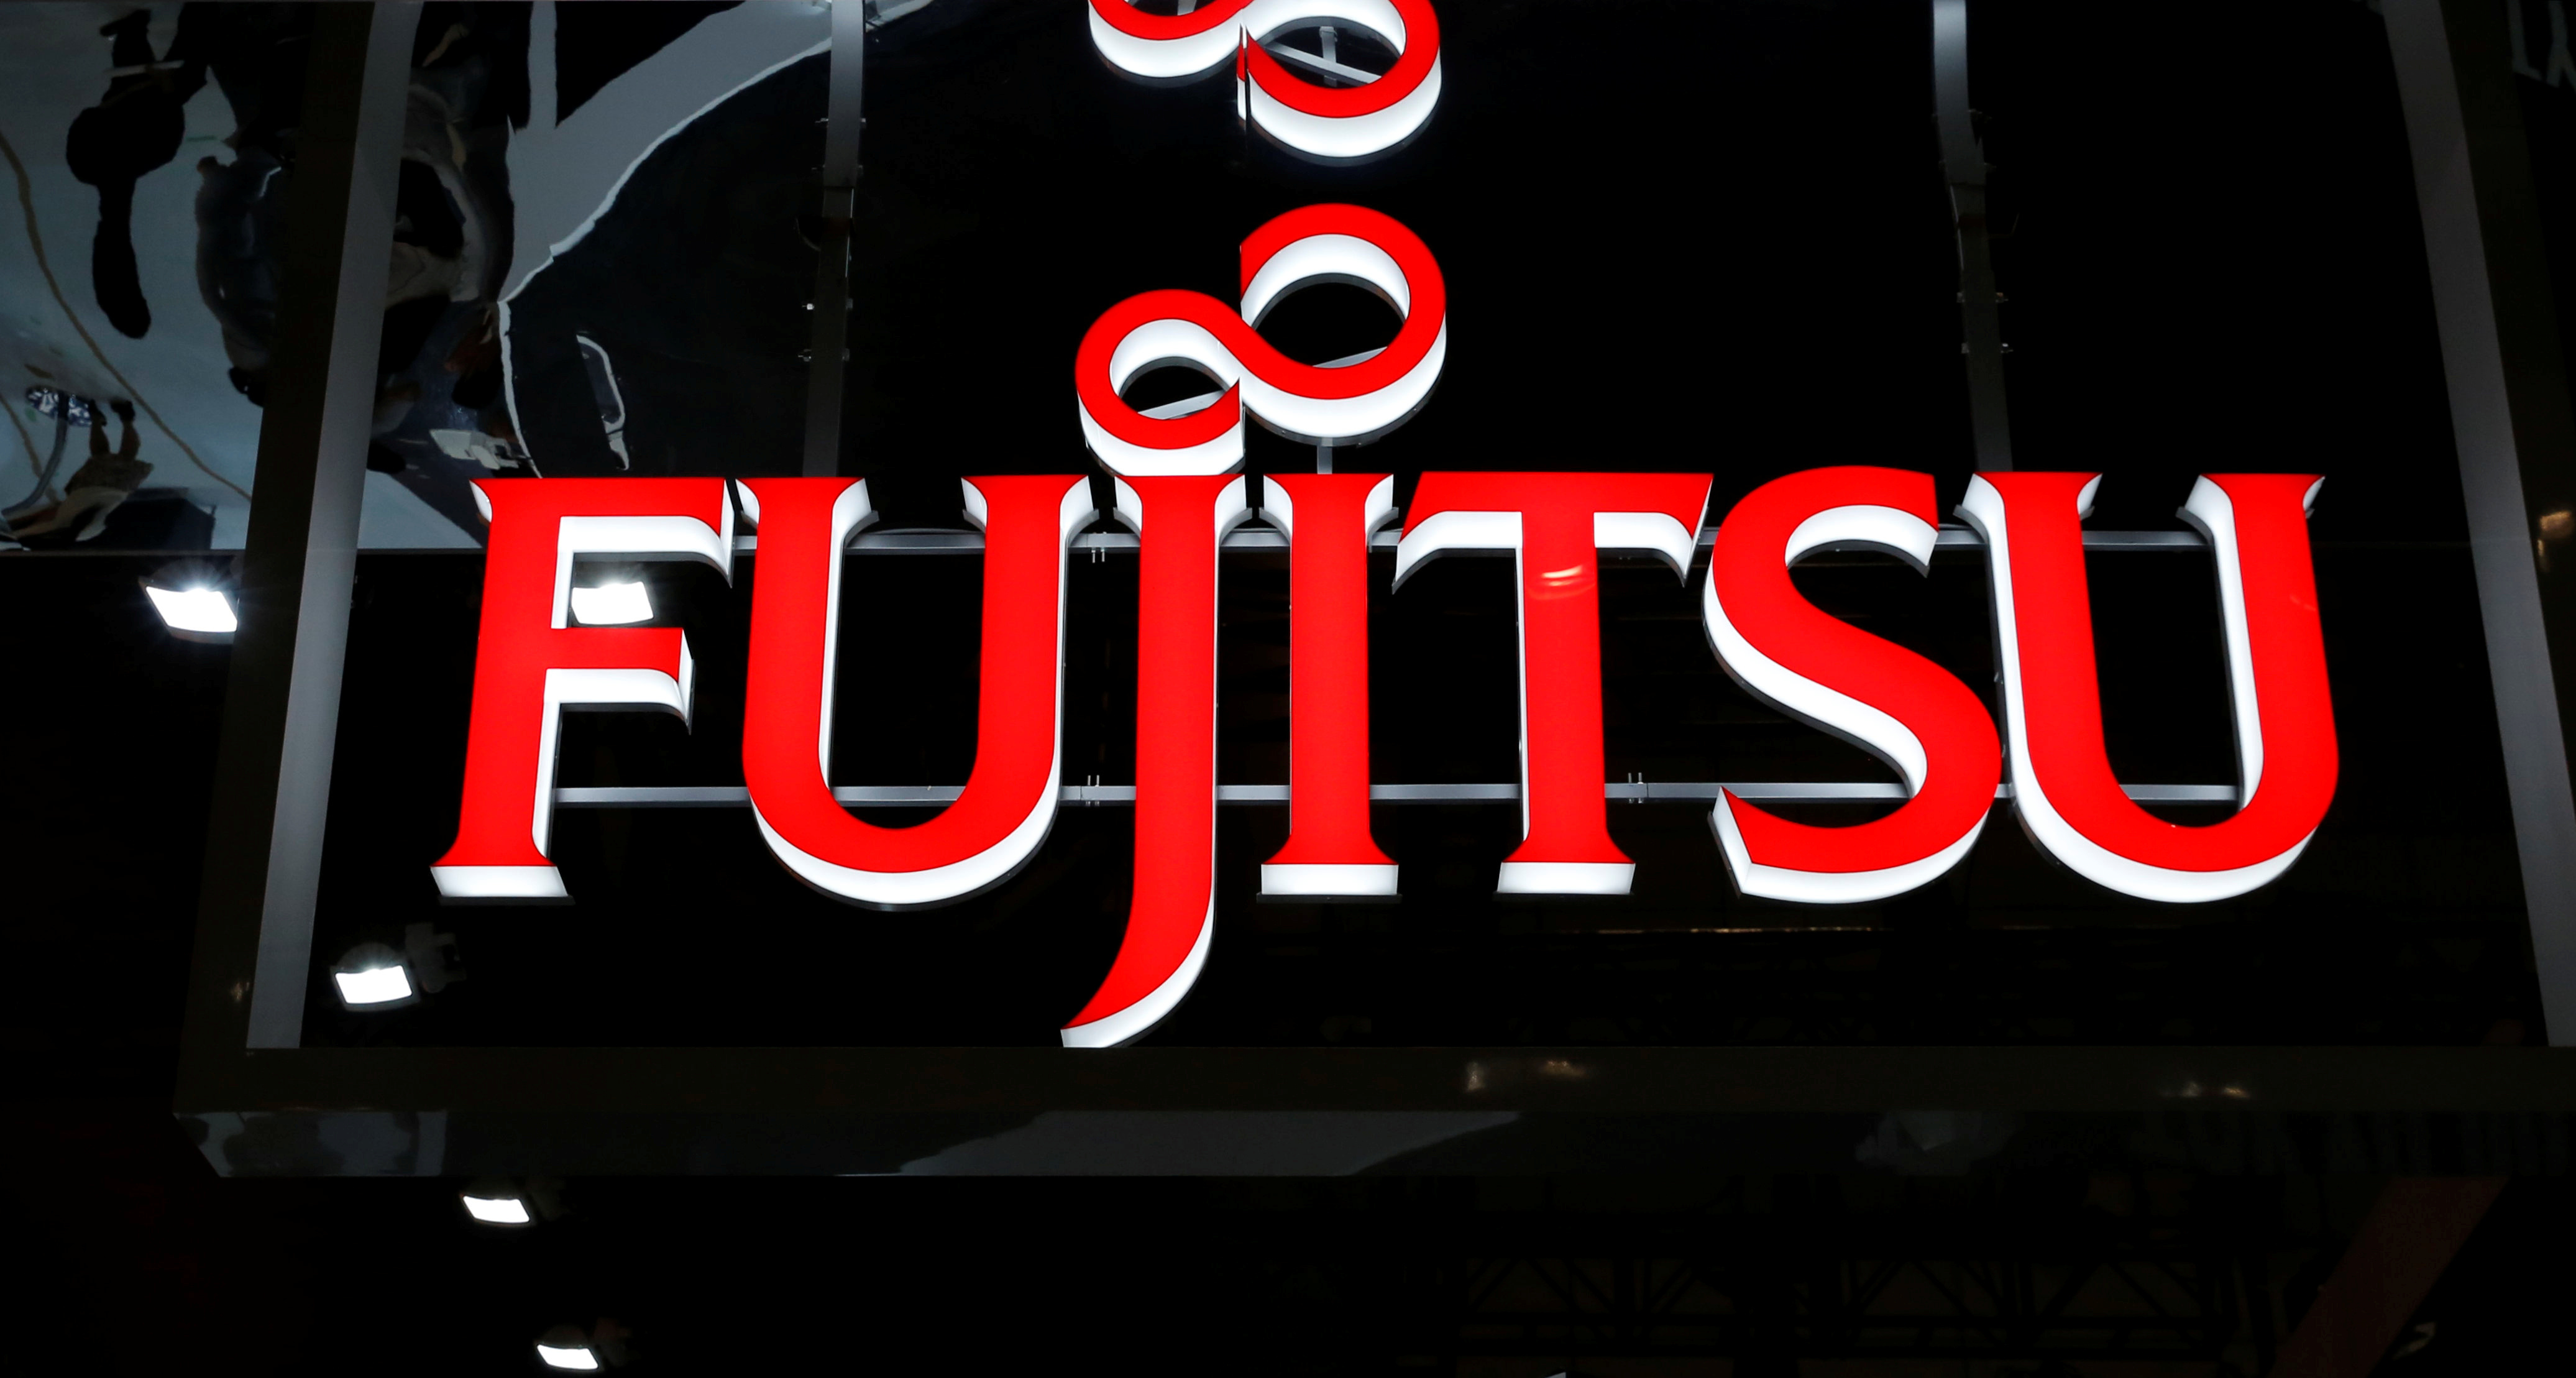 Fujitsu zahajuje aukci obchodu s klimatizací - zdroje | Reuters